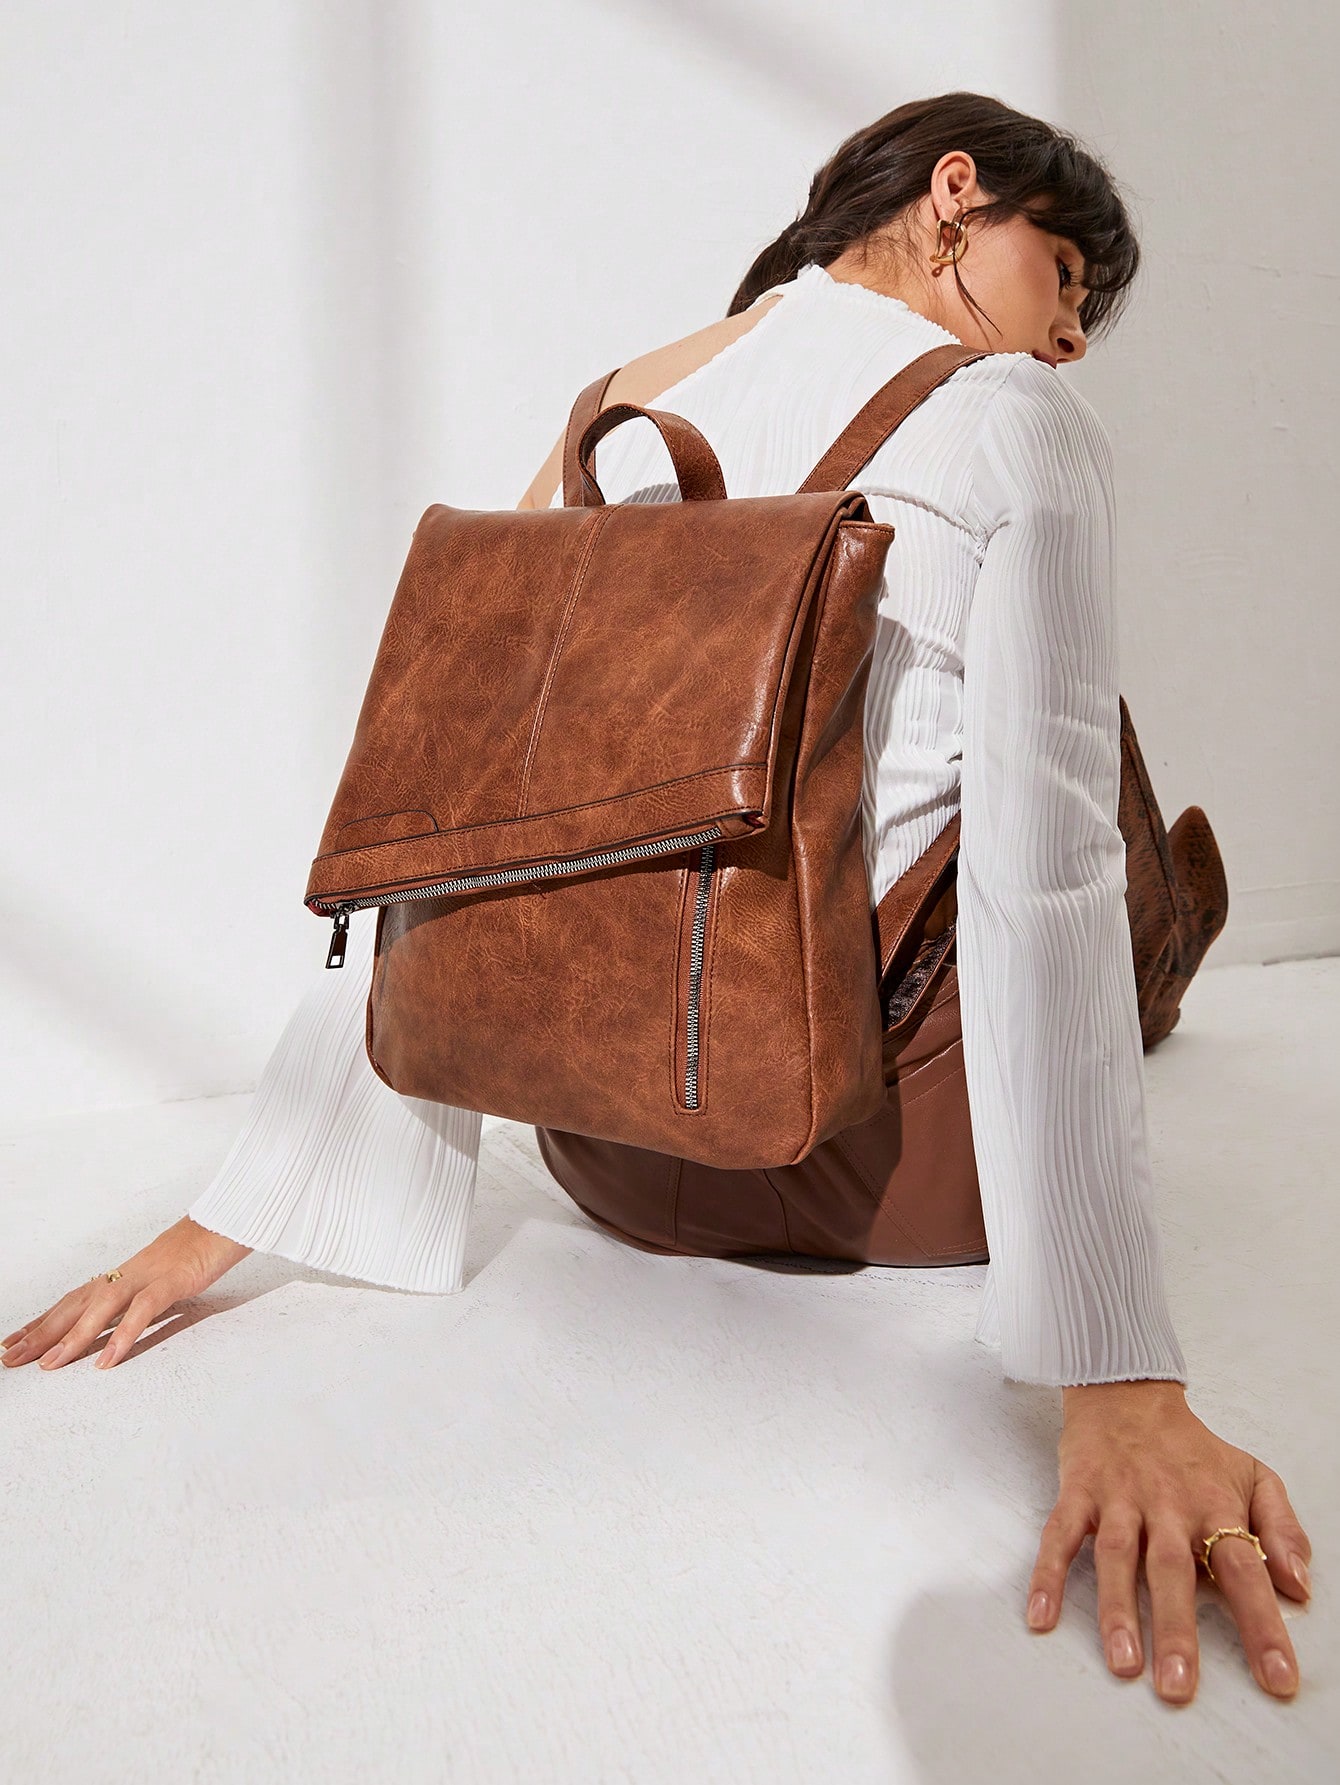 Винтажный женский рюкзак из искусственной кожи, коричневый рюкзак женский из мягкой кожи сумочка на плечо в стиле ретро повседневный дорожный ранец с карманами брендовый дизайн